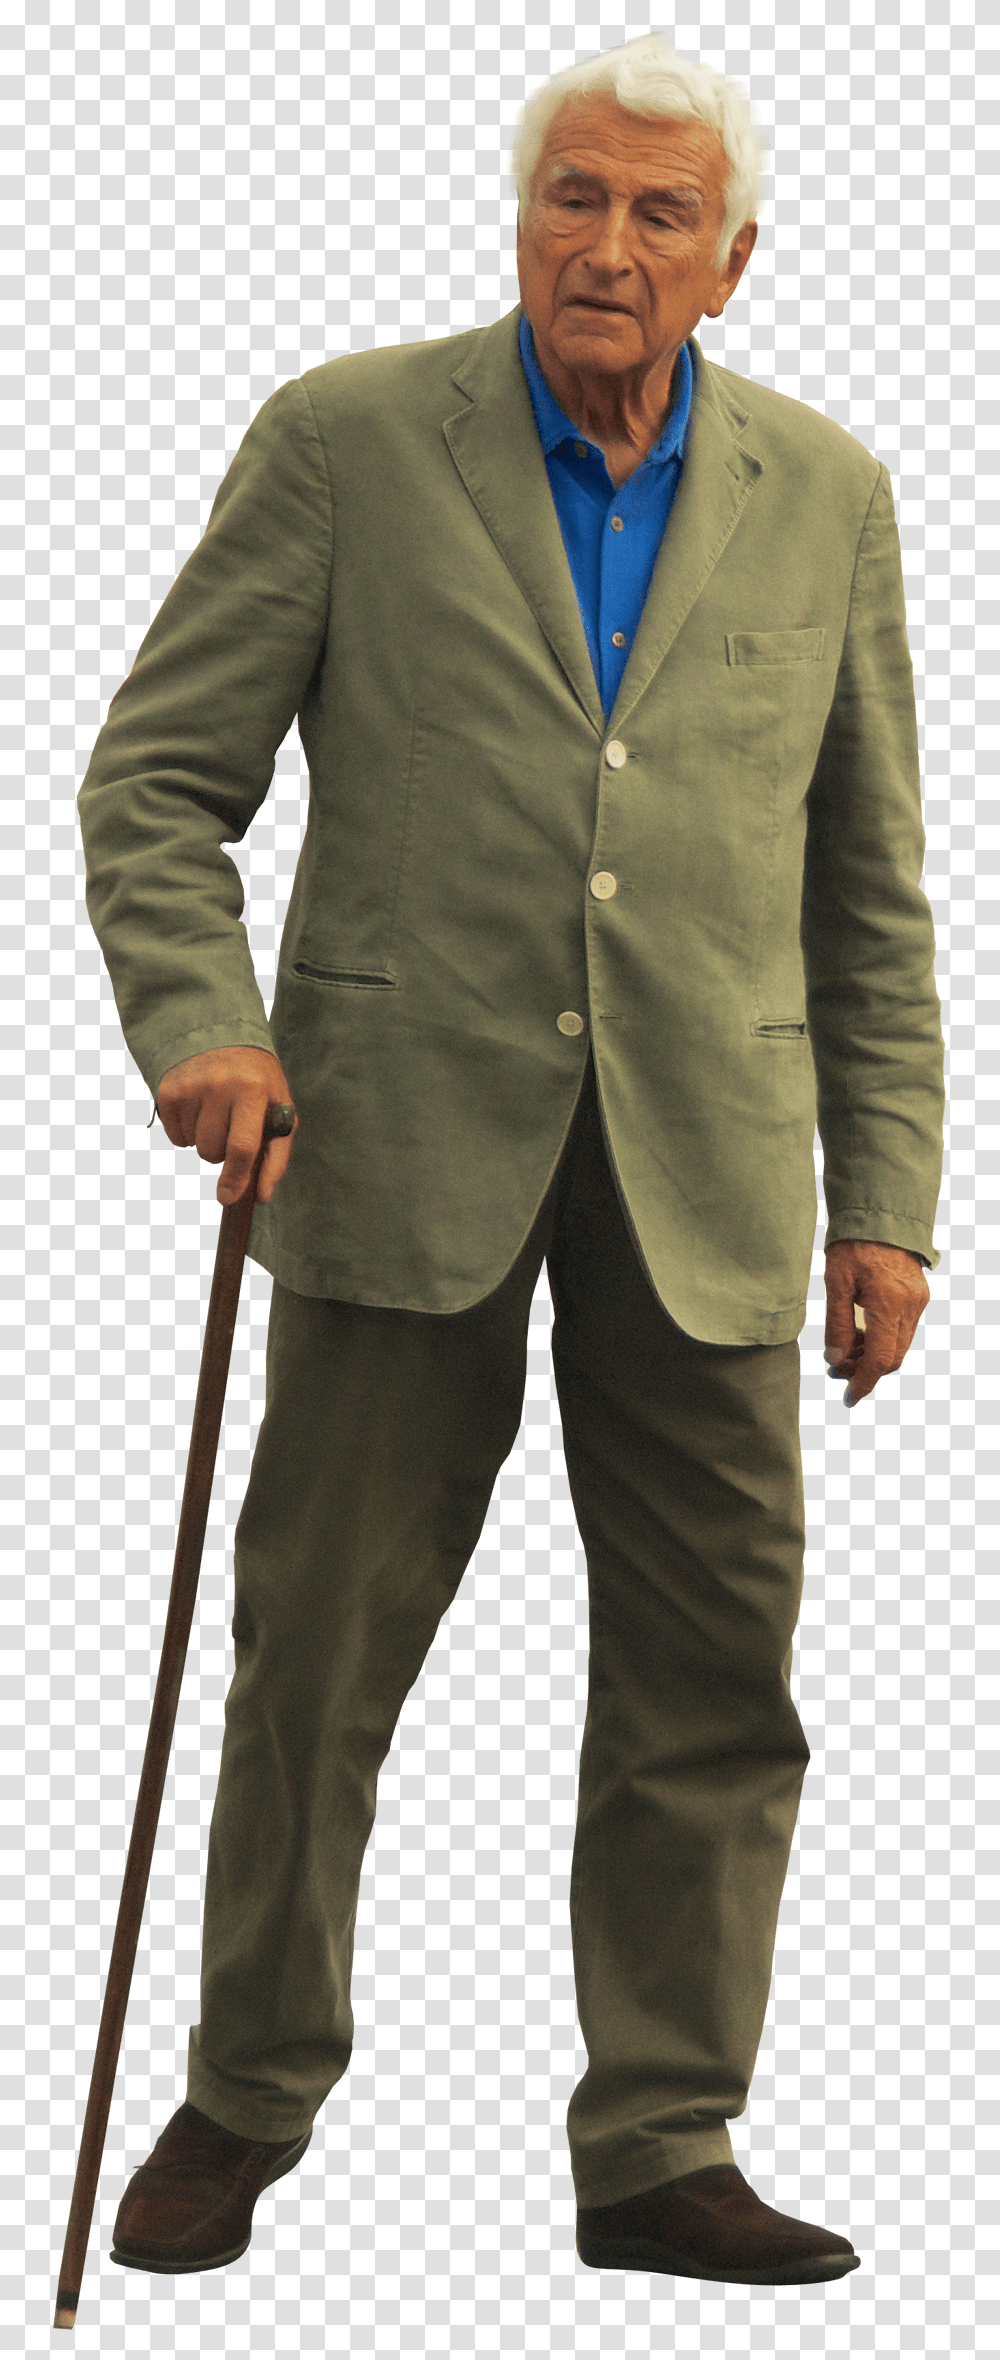 Old Man Blazer For Old Man, Suit, Overcoat, Jacket Transparent Png